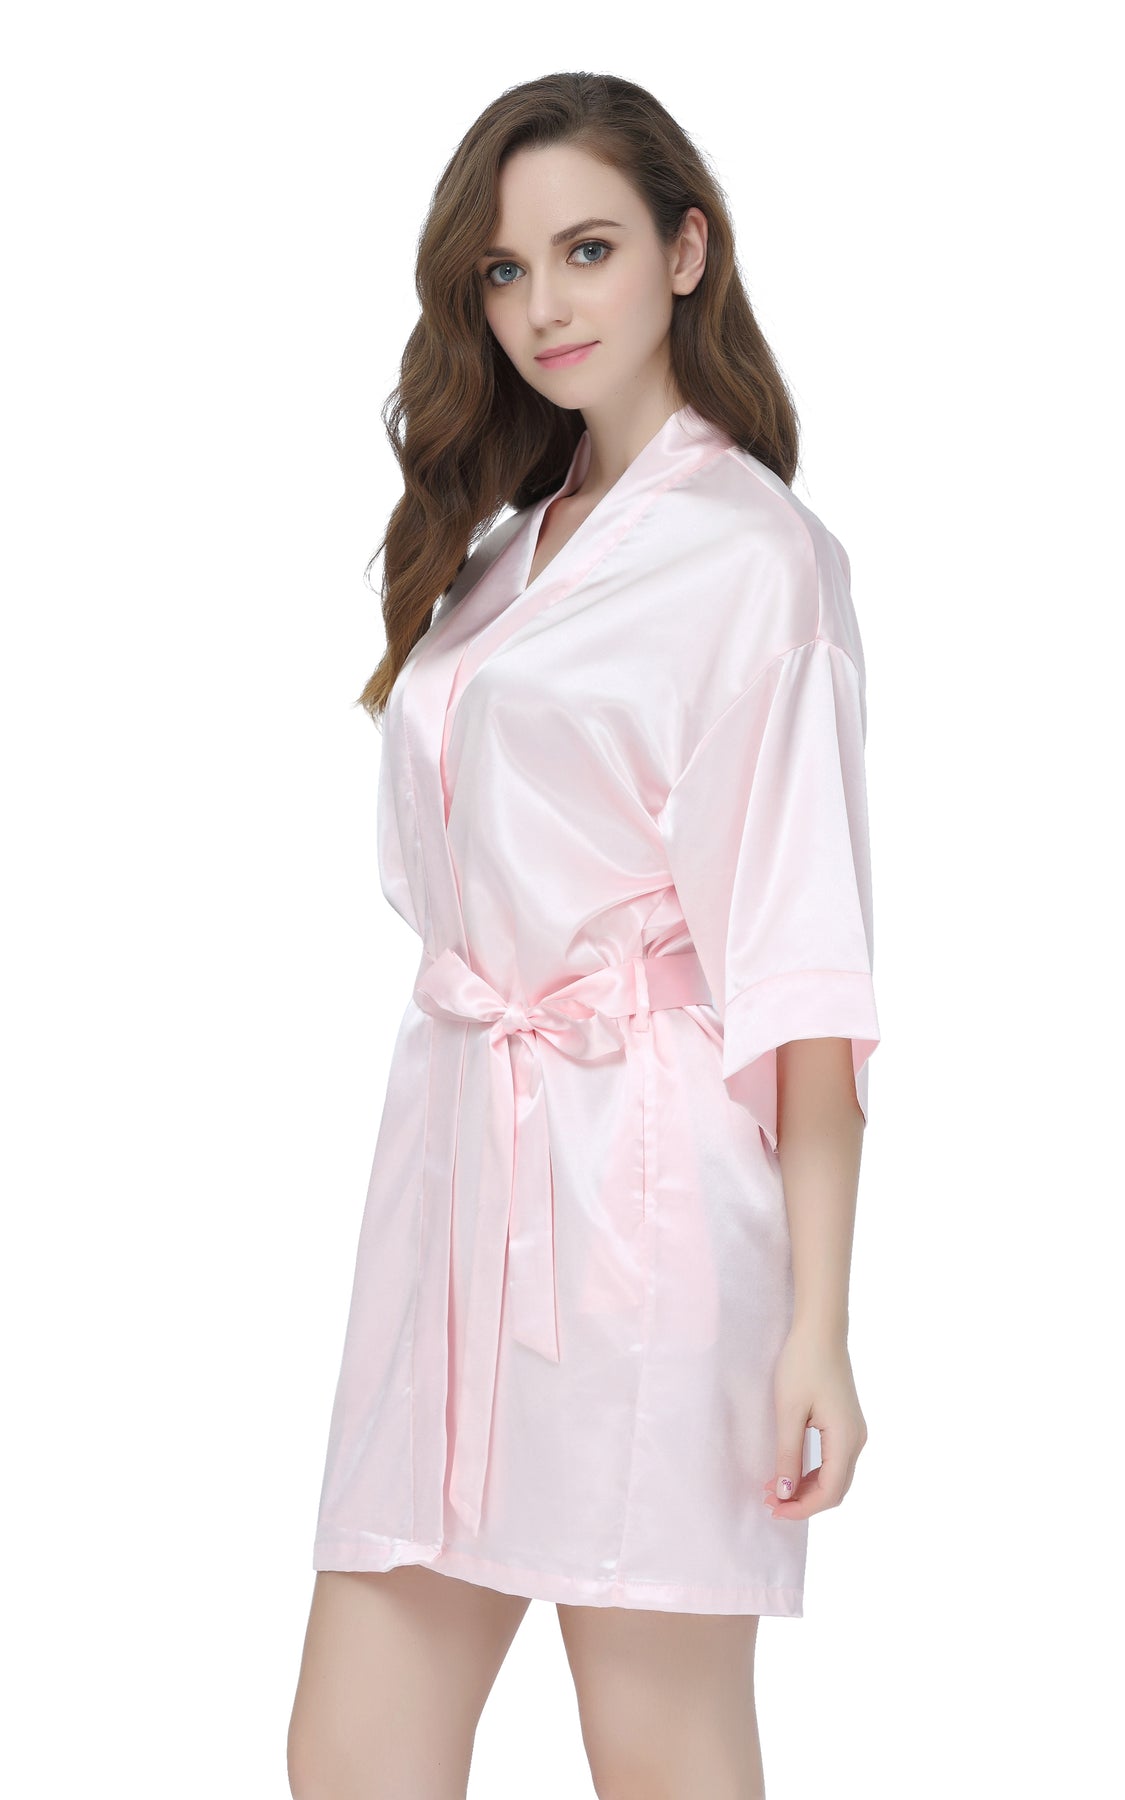 Women S Satin Short Kimono Robe Pink 2 1800x1800 ?v=1566384943